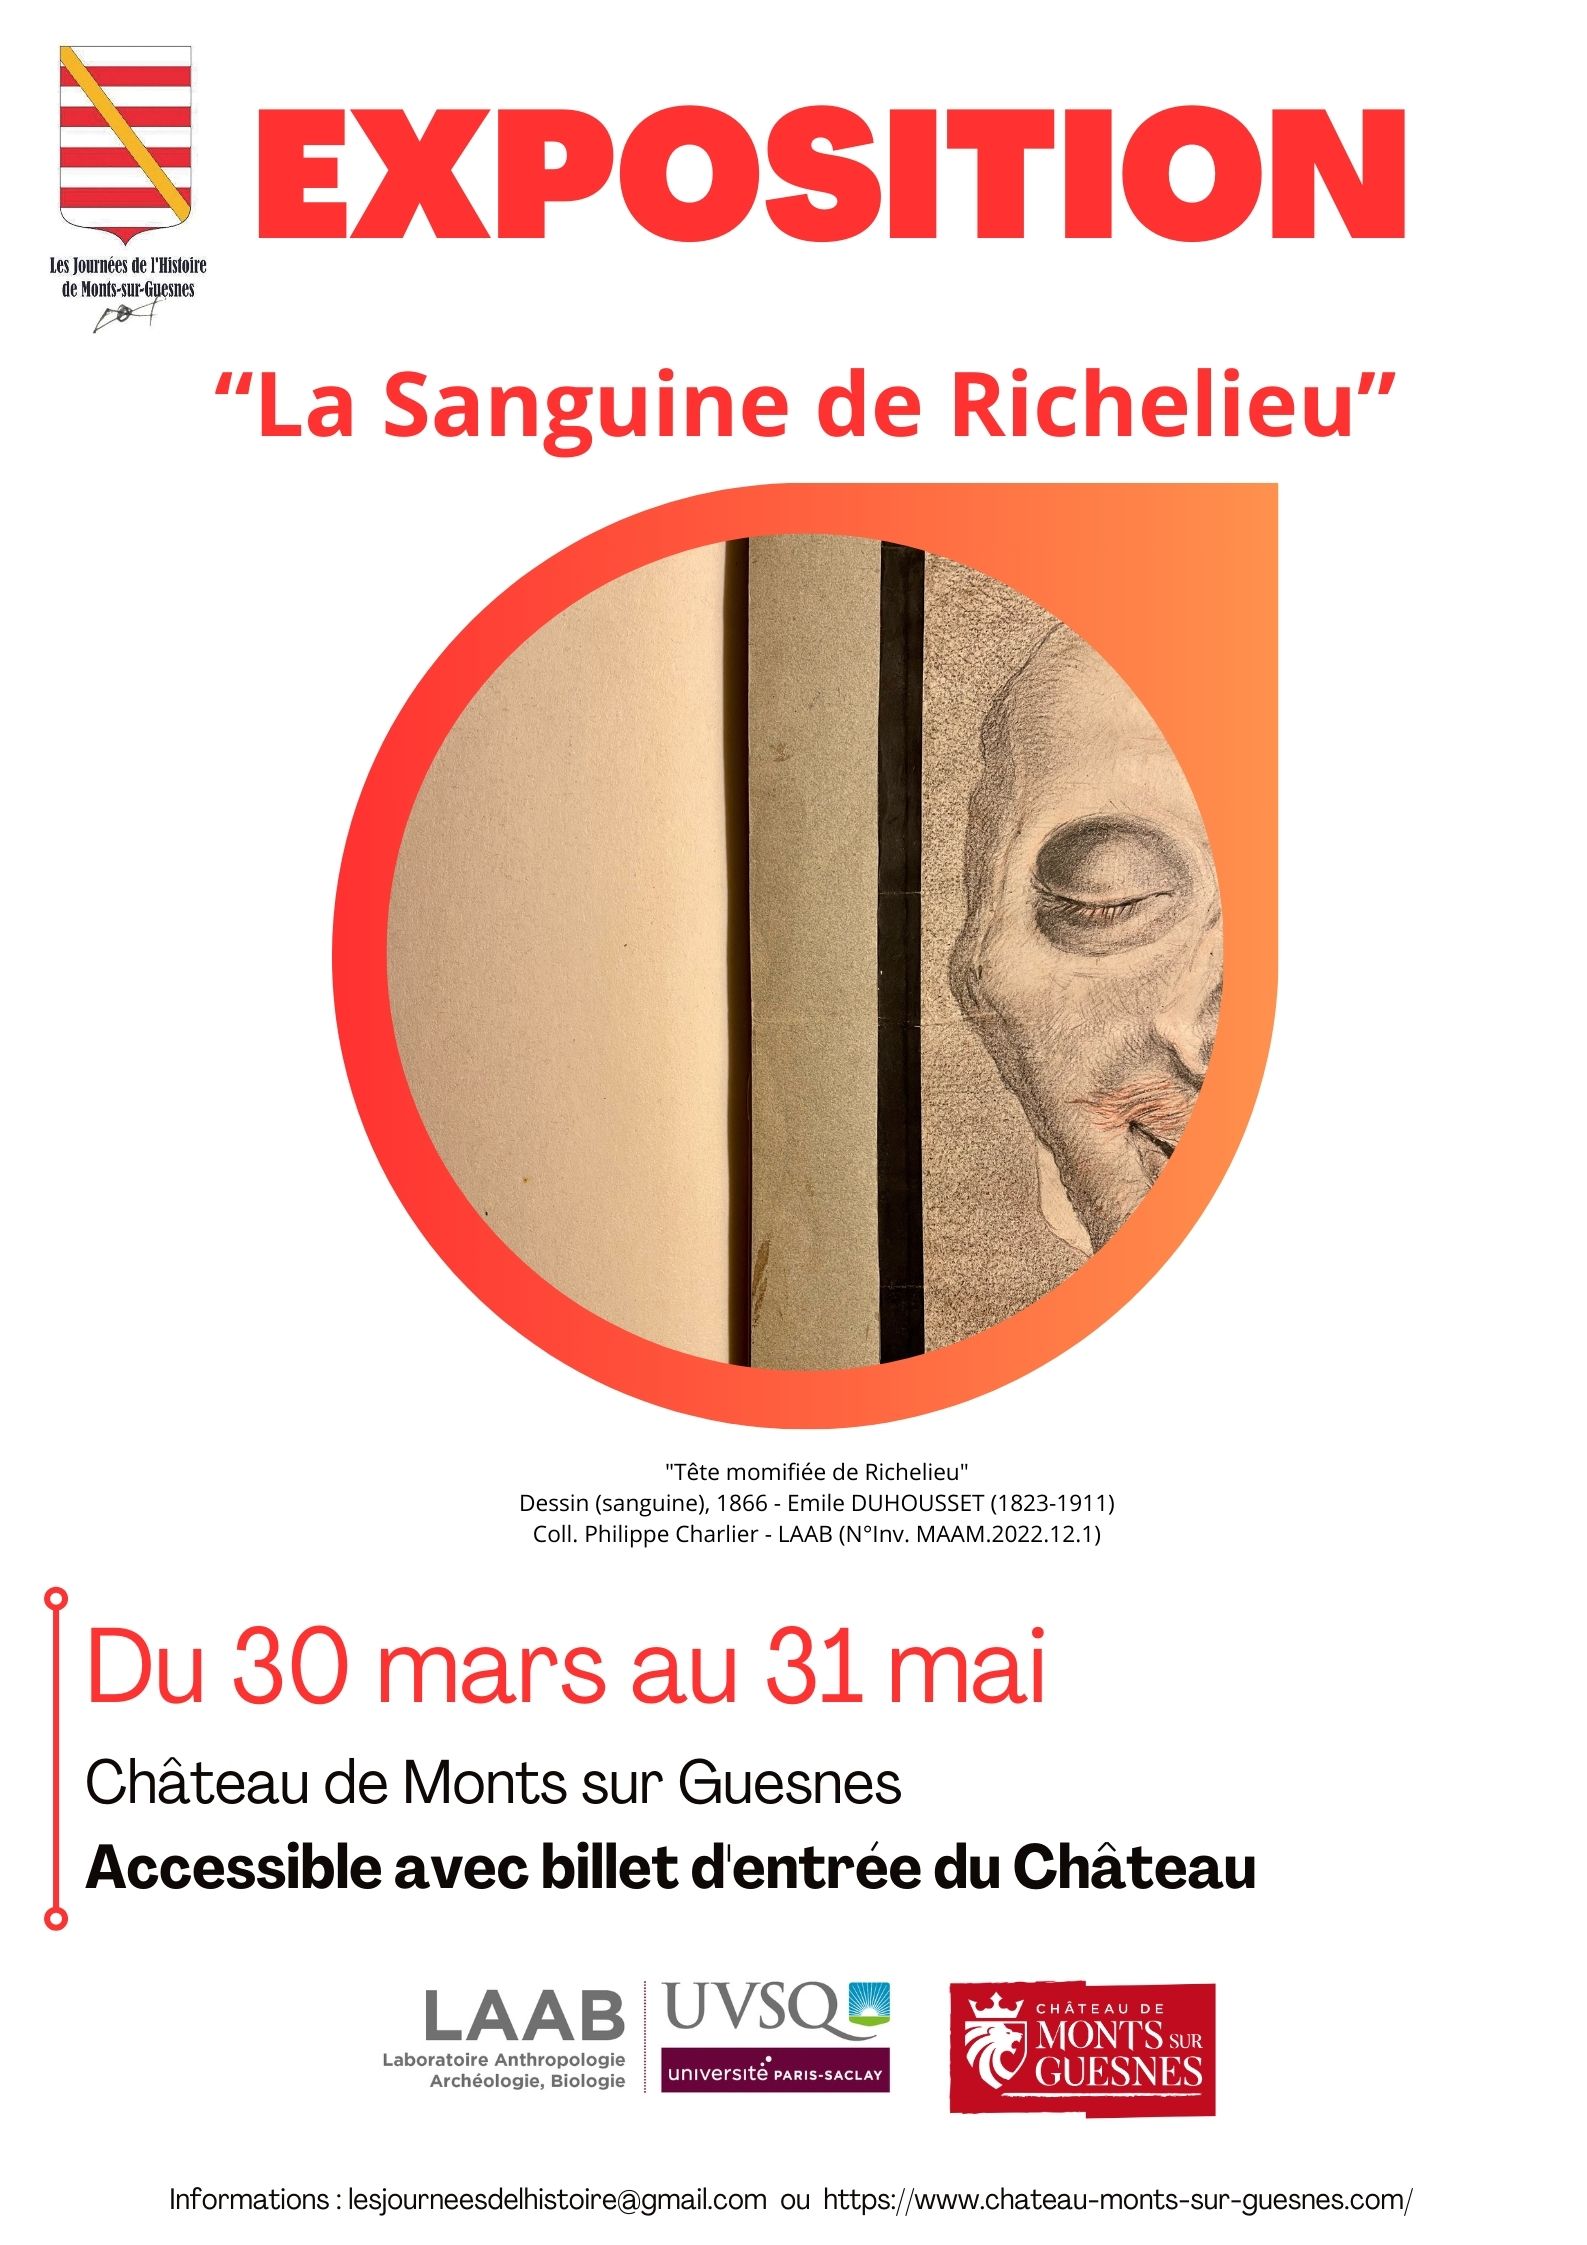 Exposition "La Sanguine de Richelieu et autres nouveaux patients de l'Histoire" au Château de Monts-sur-Guesnes null France null null null null